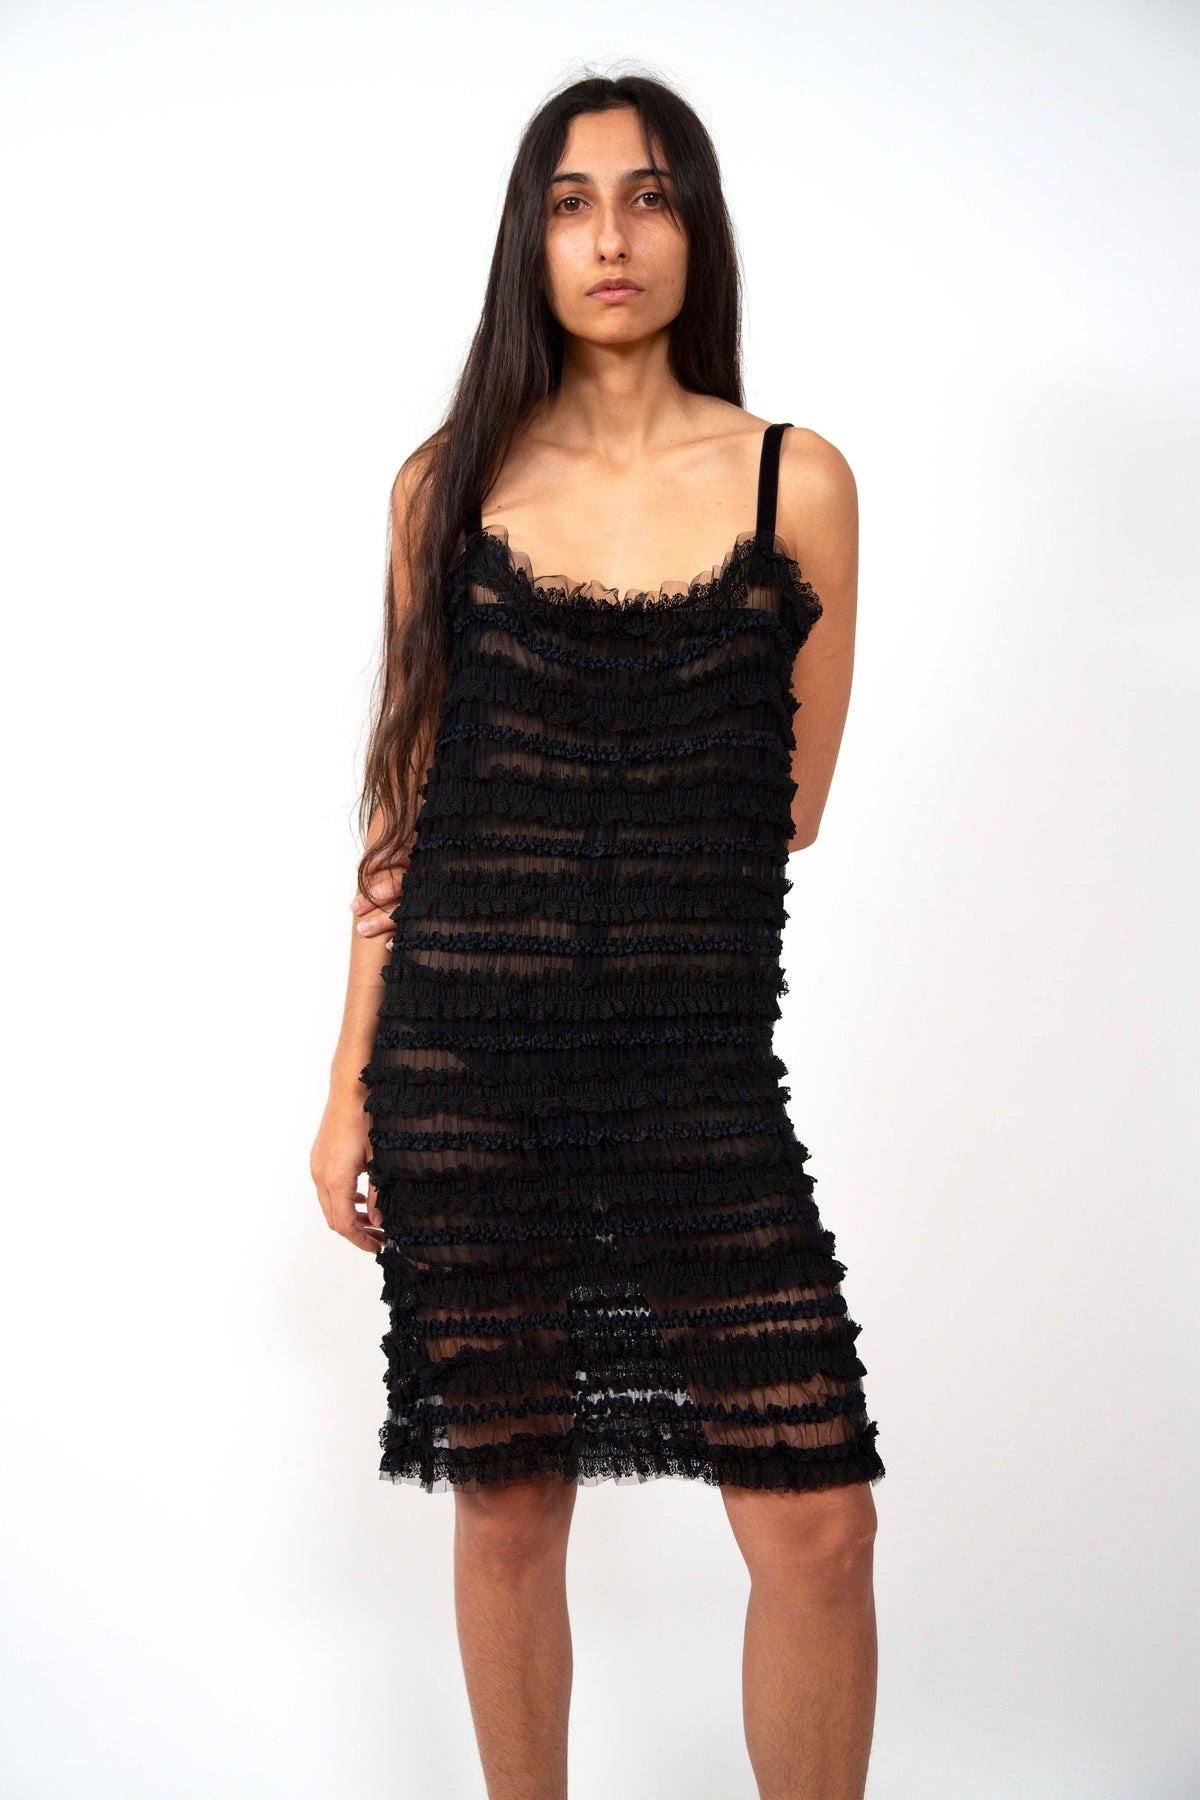 Yves Saint Laurent lace dress